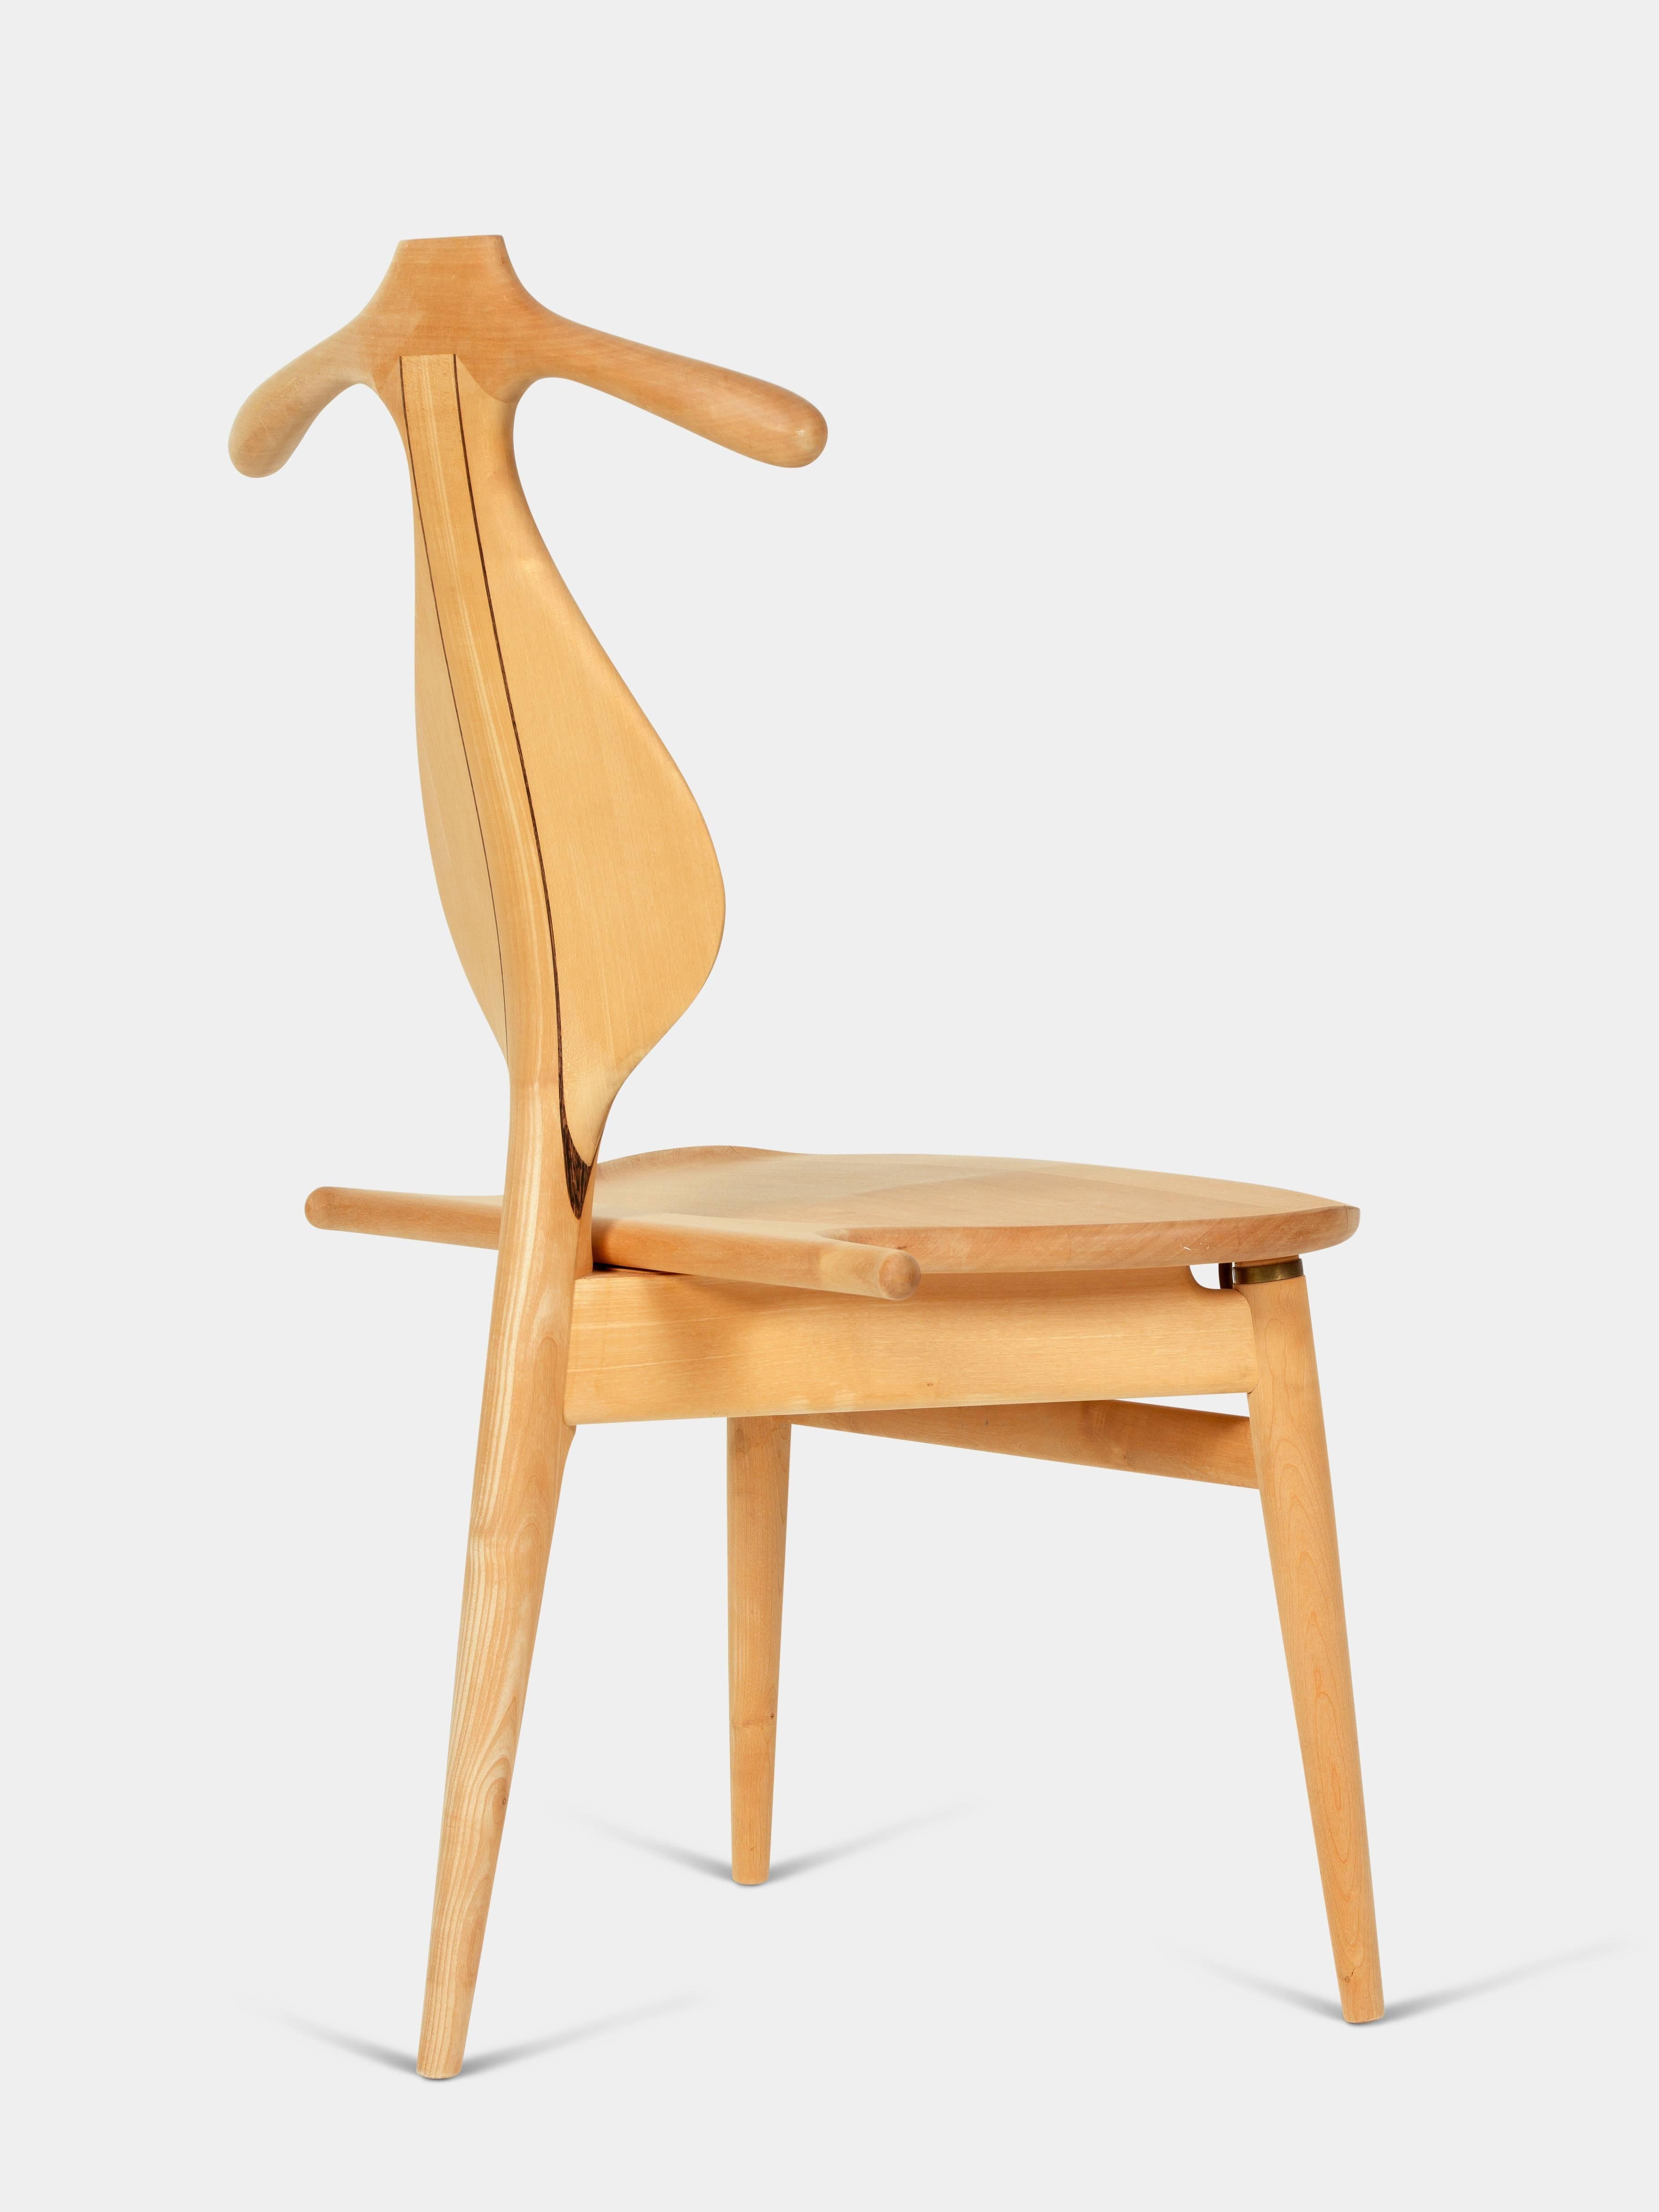 Danish Valet Chair by Hans J. Wegner